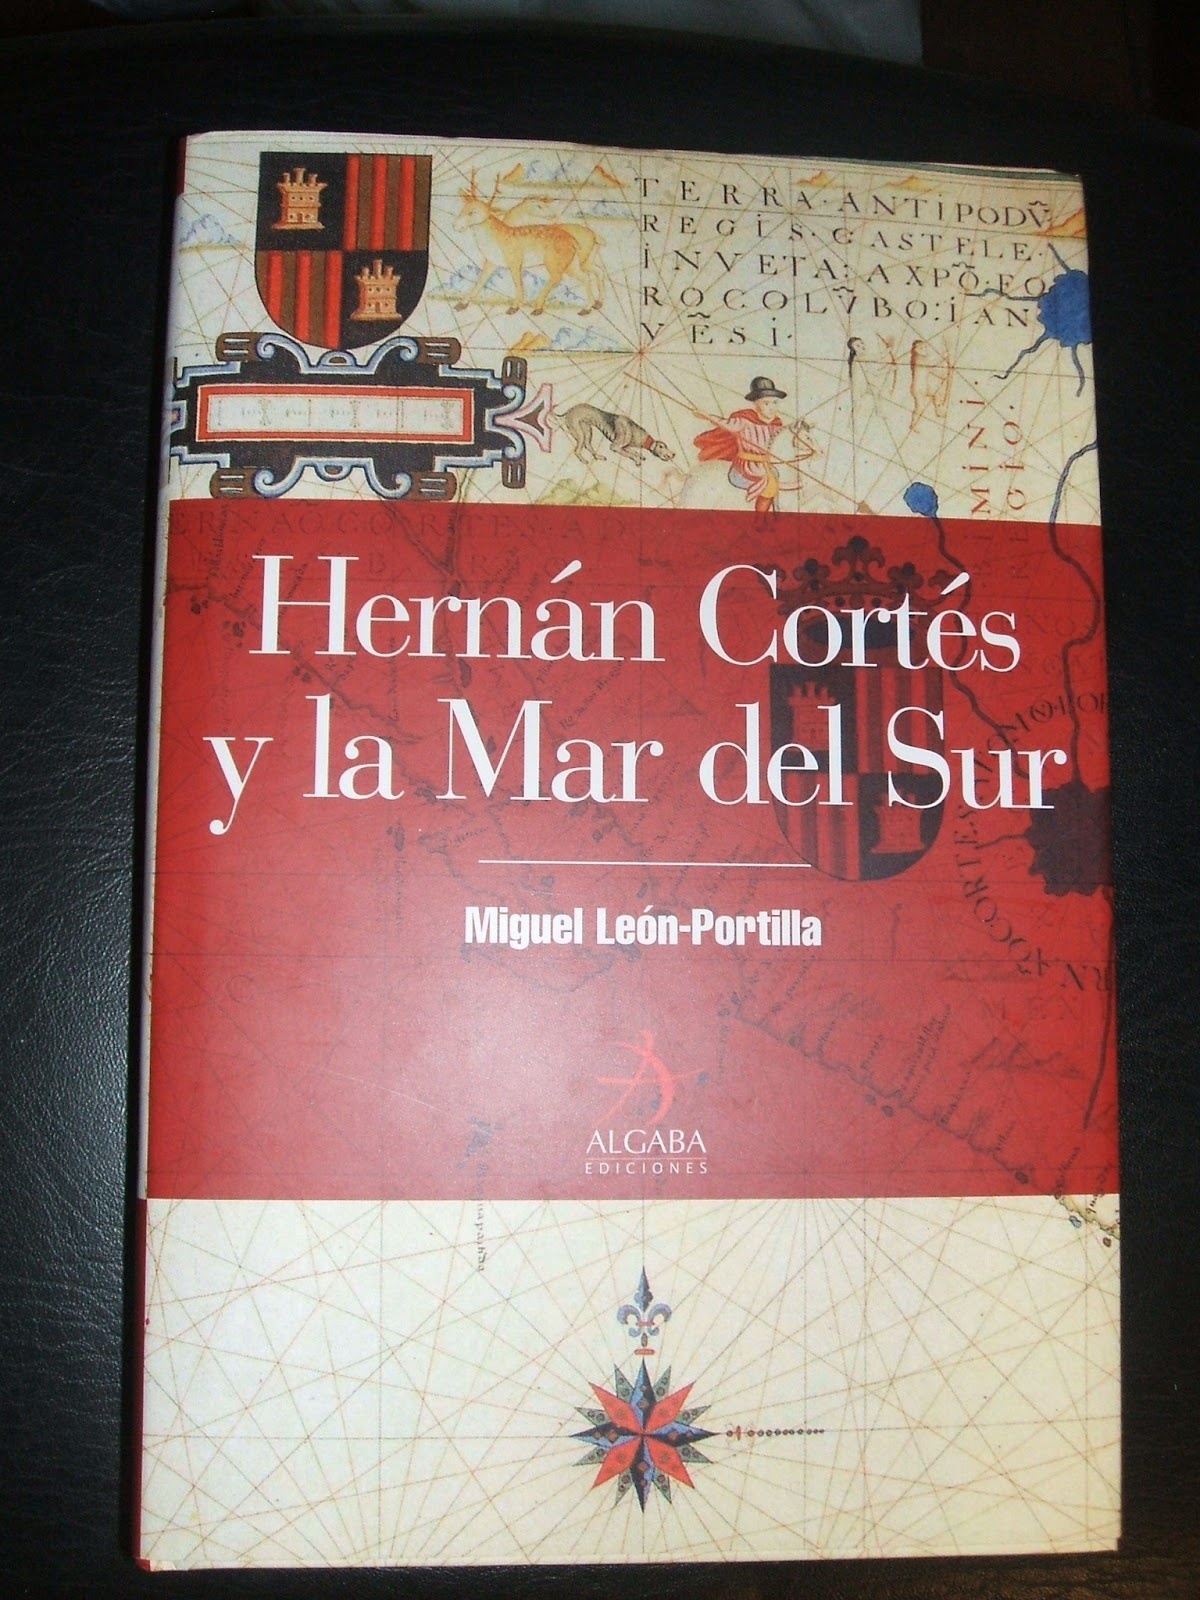 Hernán Cortés y la Mar del Sur